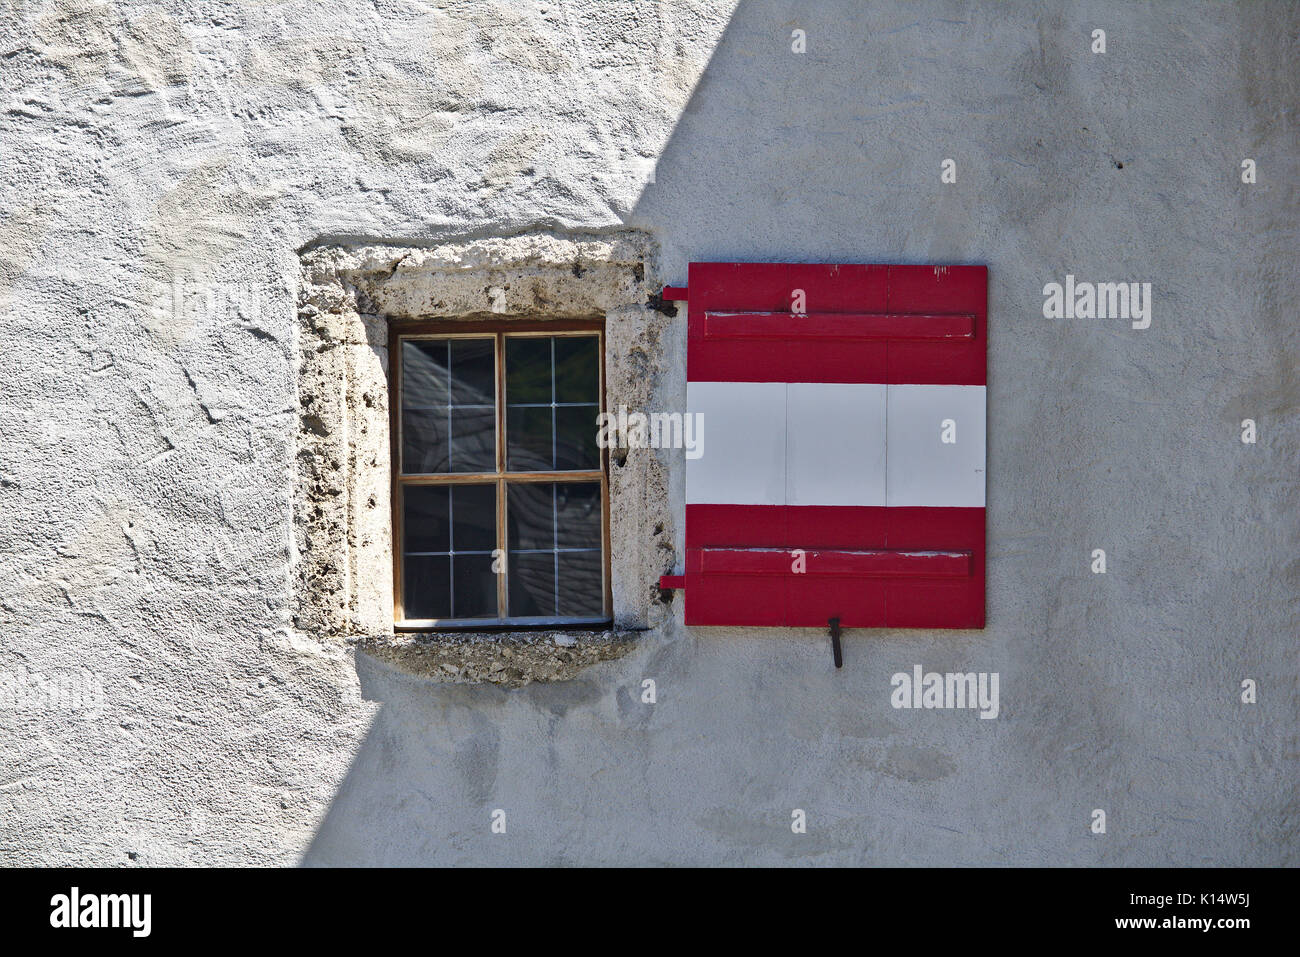 Intonacate ruvido muro di castello con finestra e persiane di legno colorato come la bandiera austriaca, in parte ombreggiato e parzialmente illuminata da luce solare Foto Stock